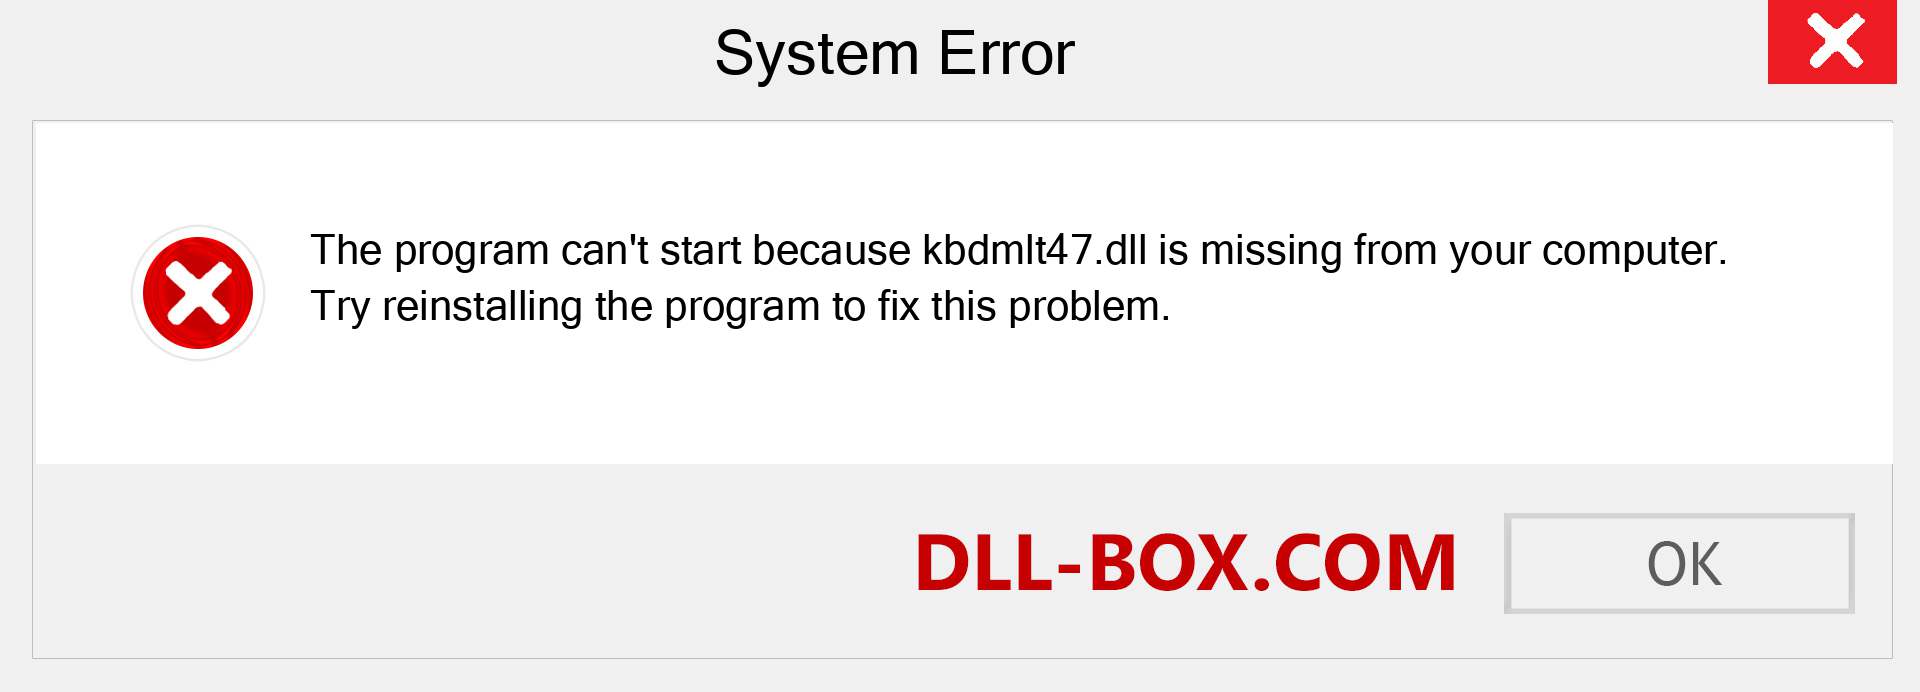  kbdmlt47.dll file is missing?. Download for Windows 7, 8, 10 - Fix  kbdmlt47 dll Missing Error on Windows, photos, images